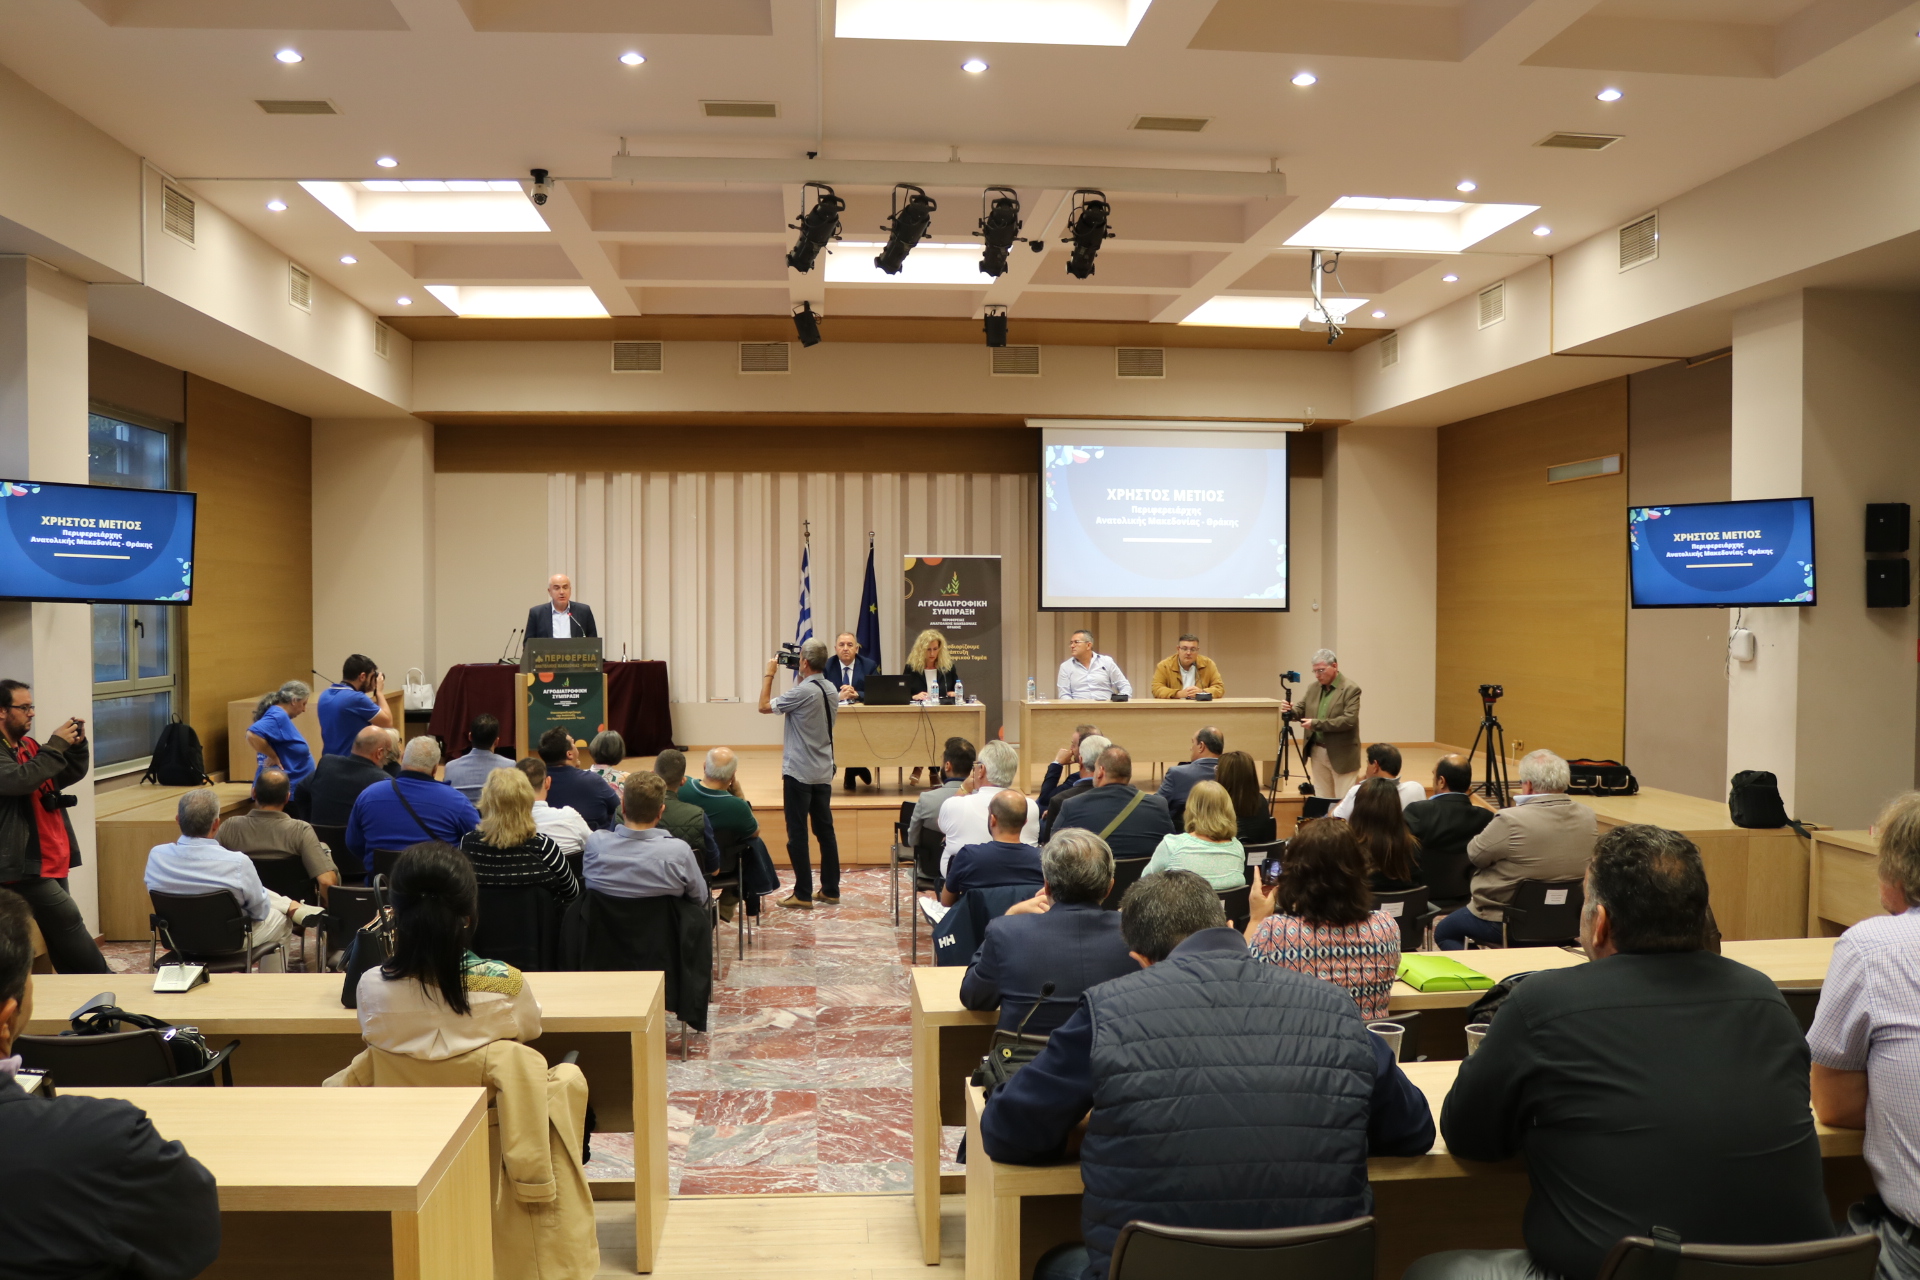 Πραγματοποιήθηκε η παρουσίαση της Αγροδιατροφικής Σύμπραξης της Περιφέρειας Α.Μ.Θ. – Πρόεδρος ο Βασίλης Δελησταμάτης